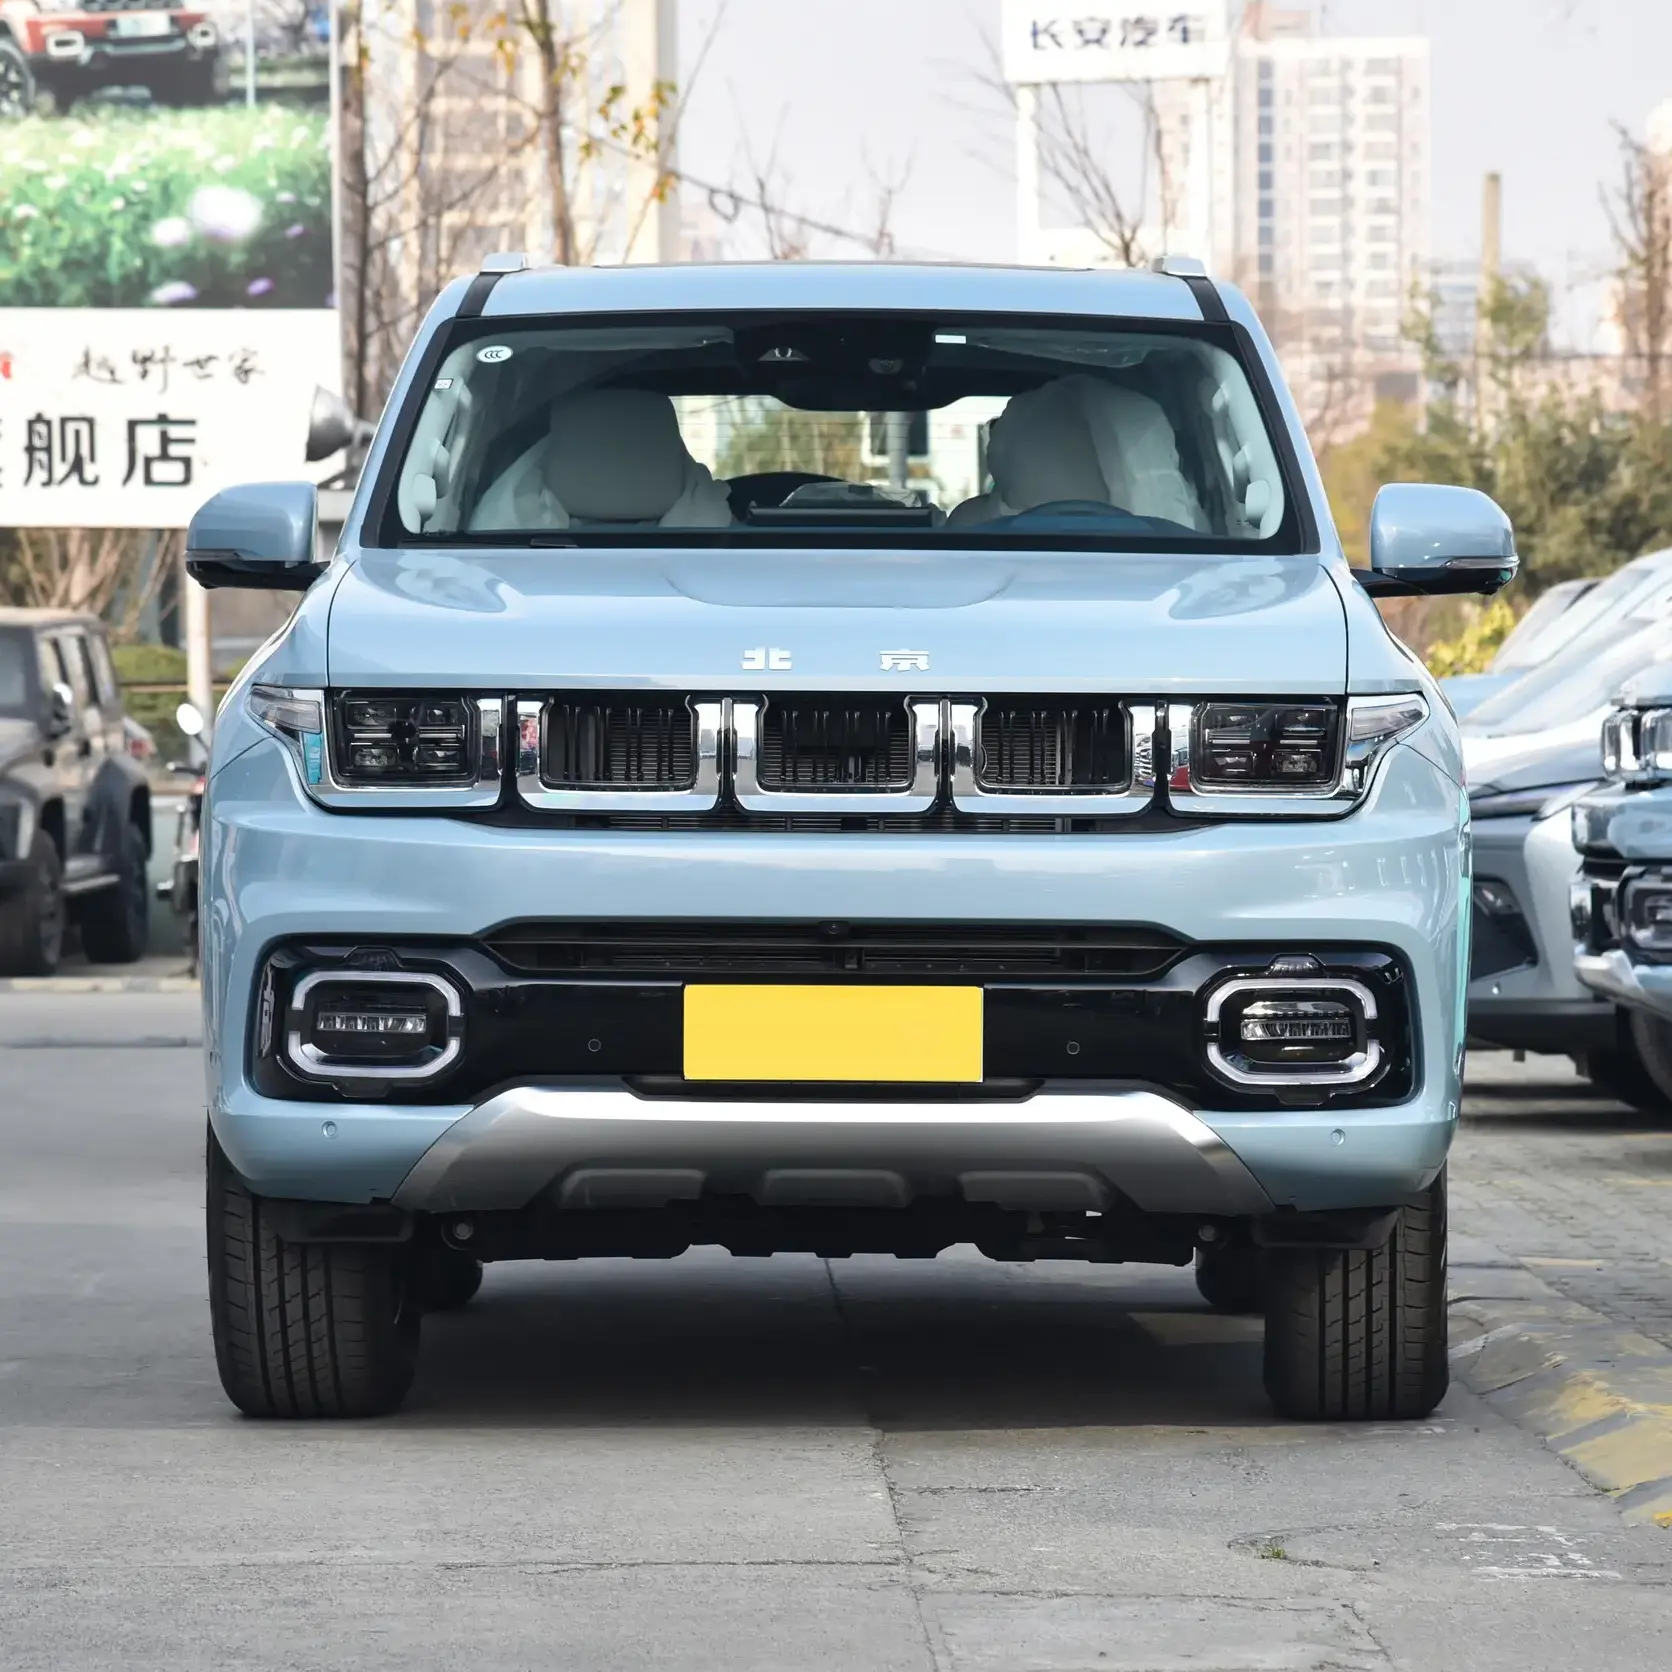 מכוניות סין מחירי רכב קטן אוטומטי SUV במלאי גבוהה מהירות גבוהה מכונית SUV